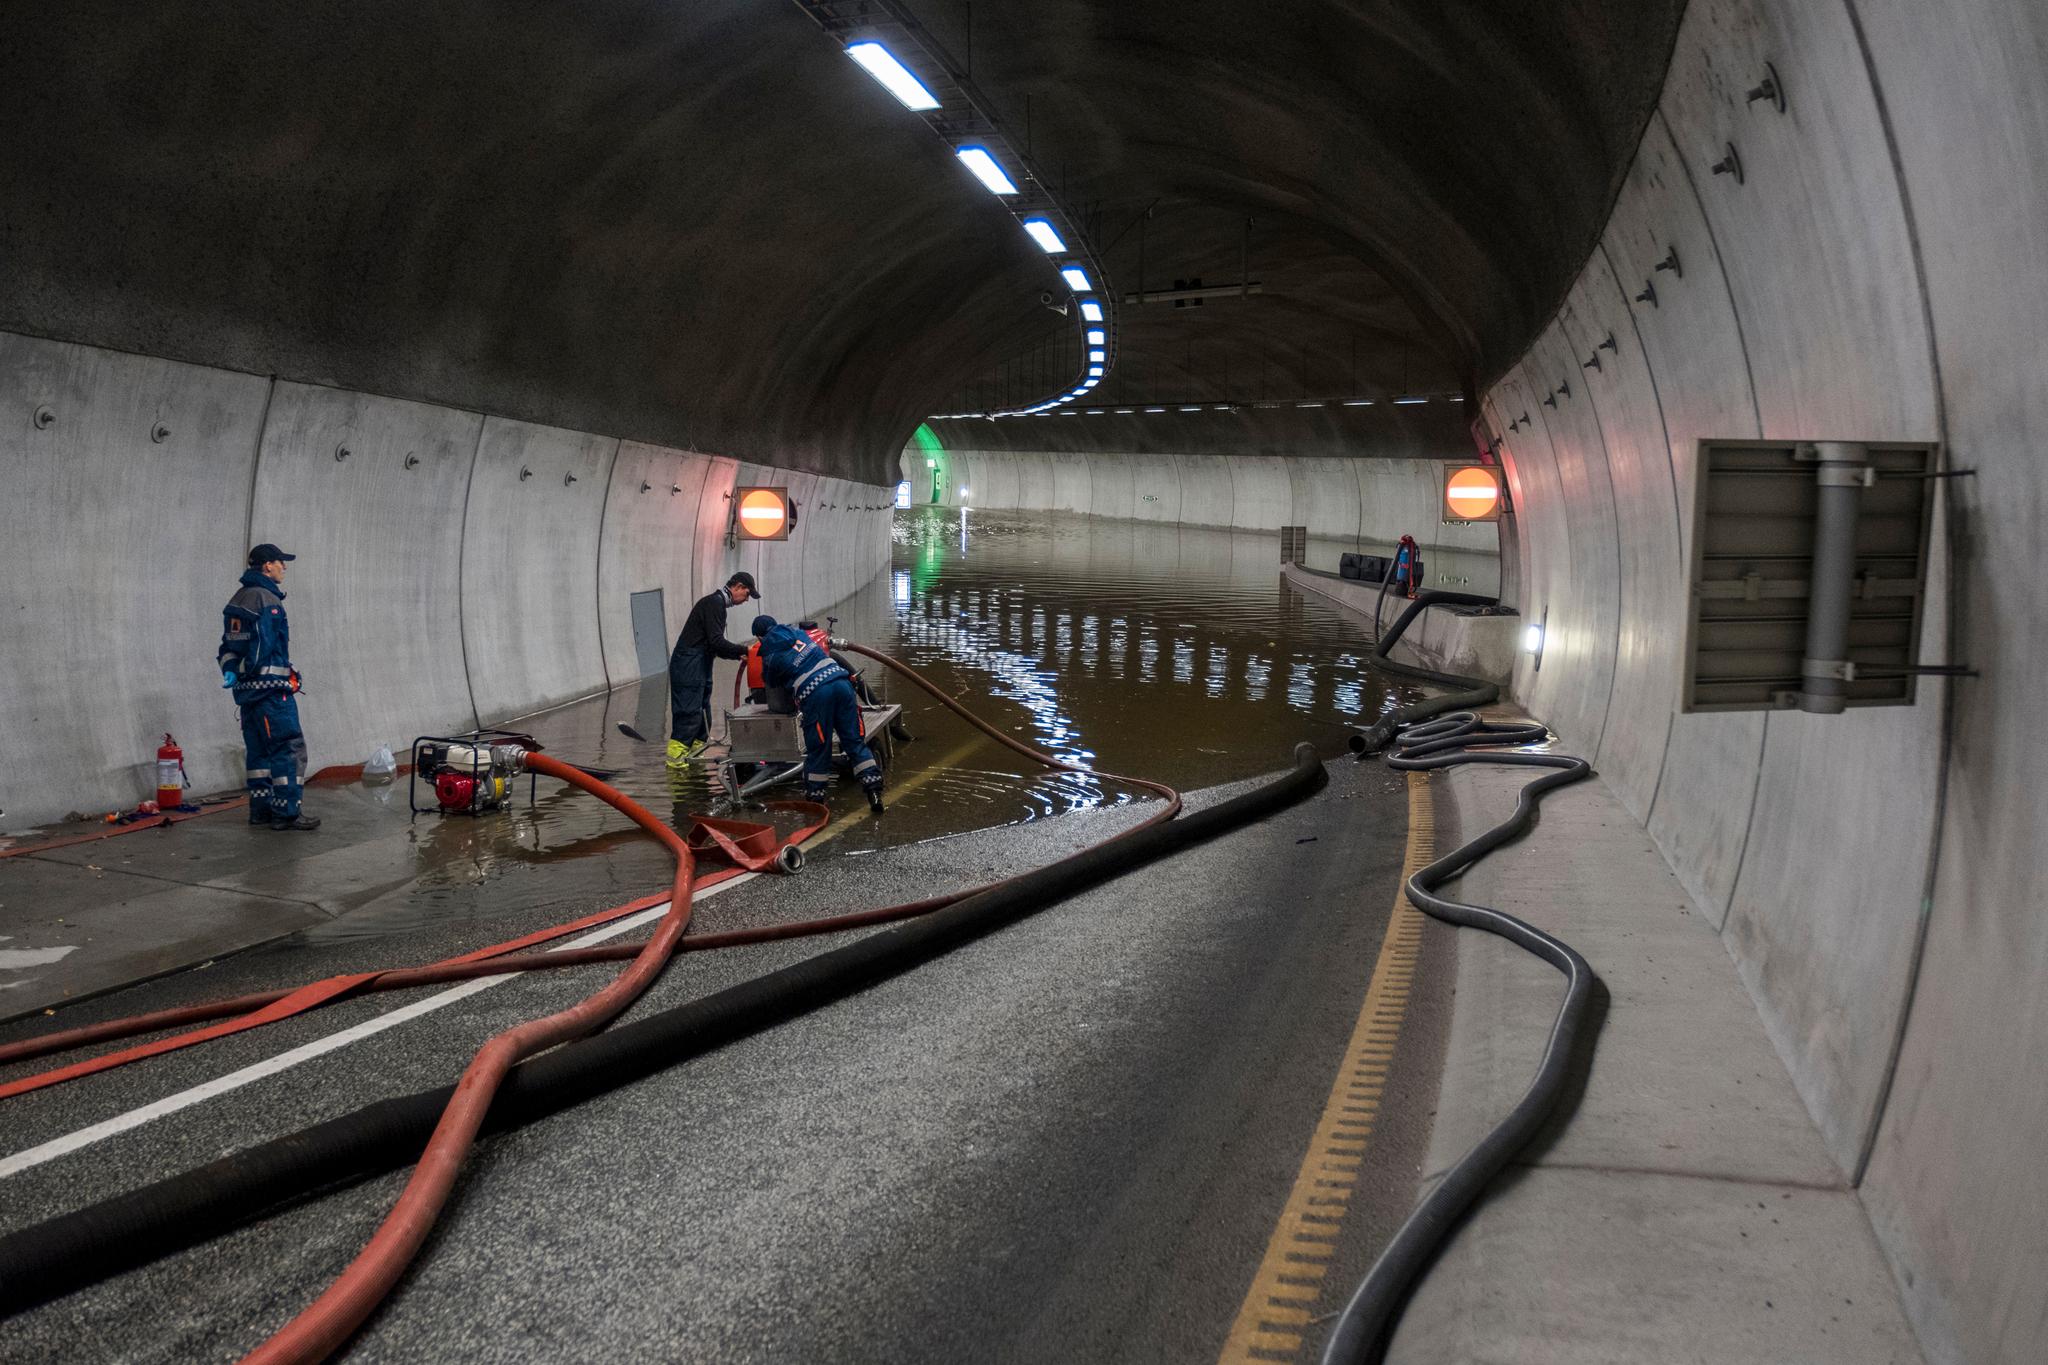  Deler av Vågsbygdporten tunnel er stengt. Tunnelen knytter Vågsbygd og E39 til sentrum av byen og er et viktig knutepunkt.